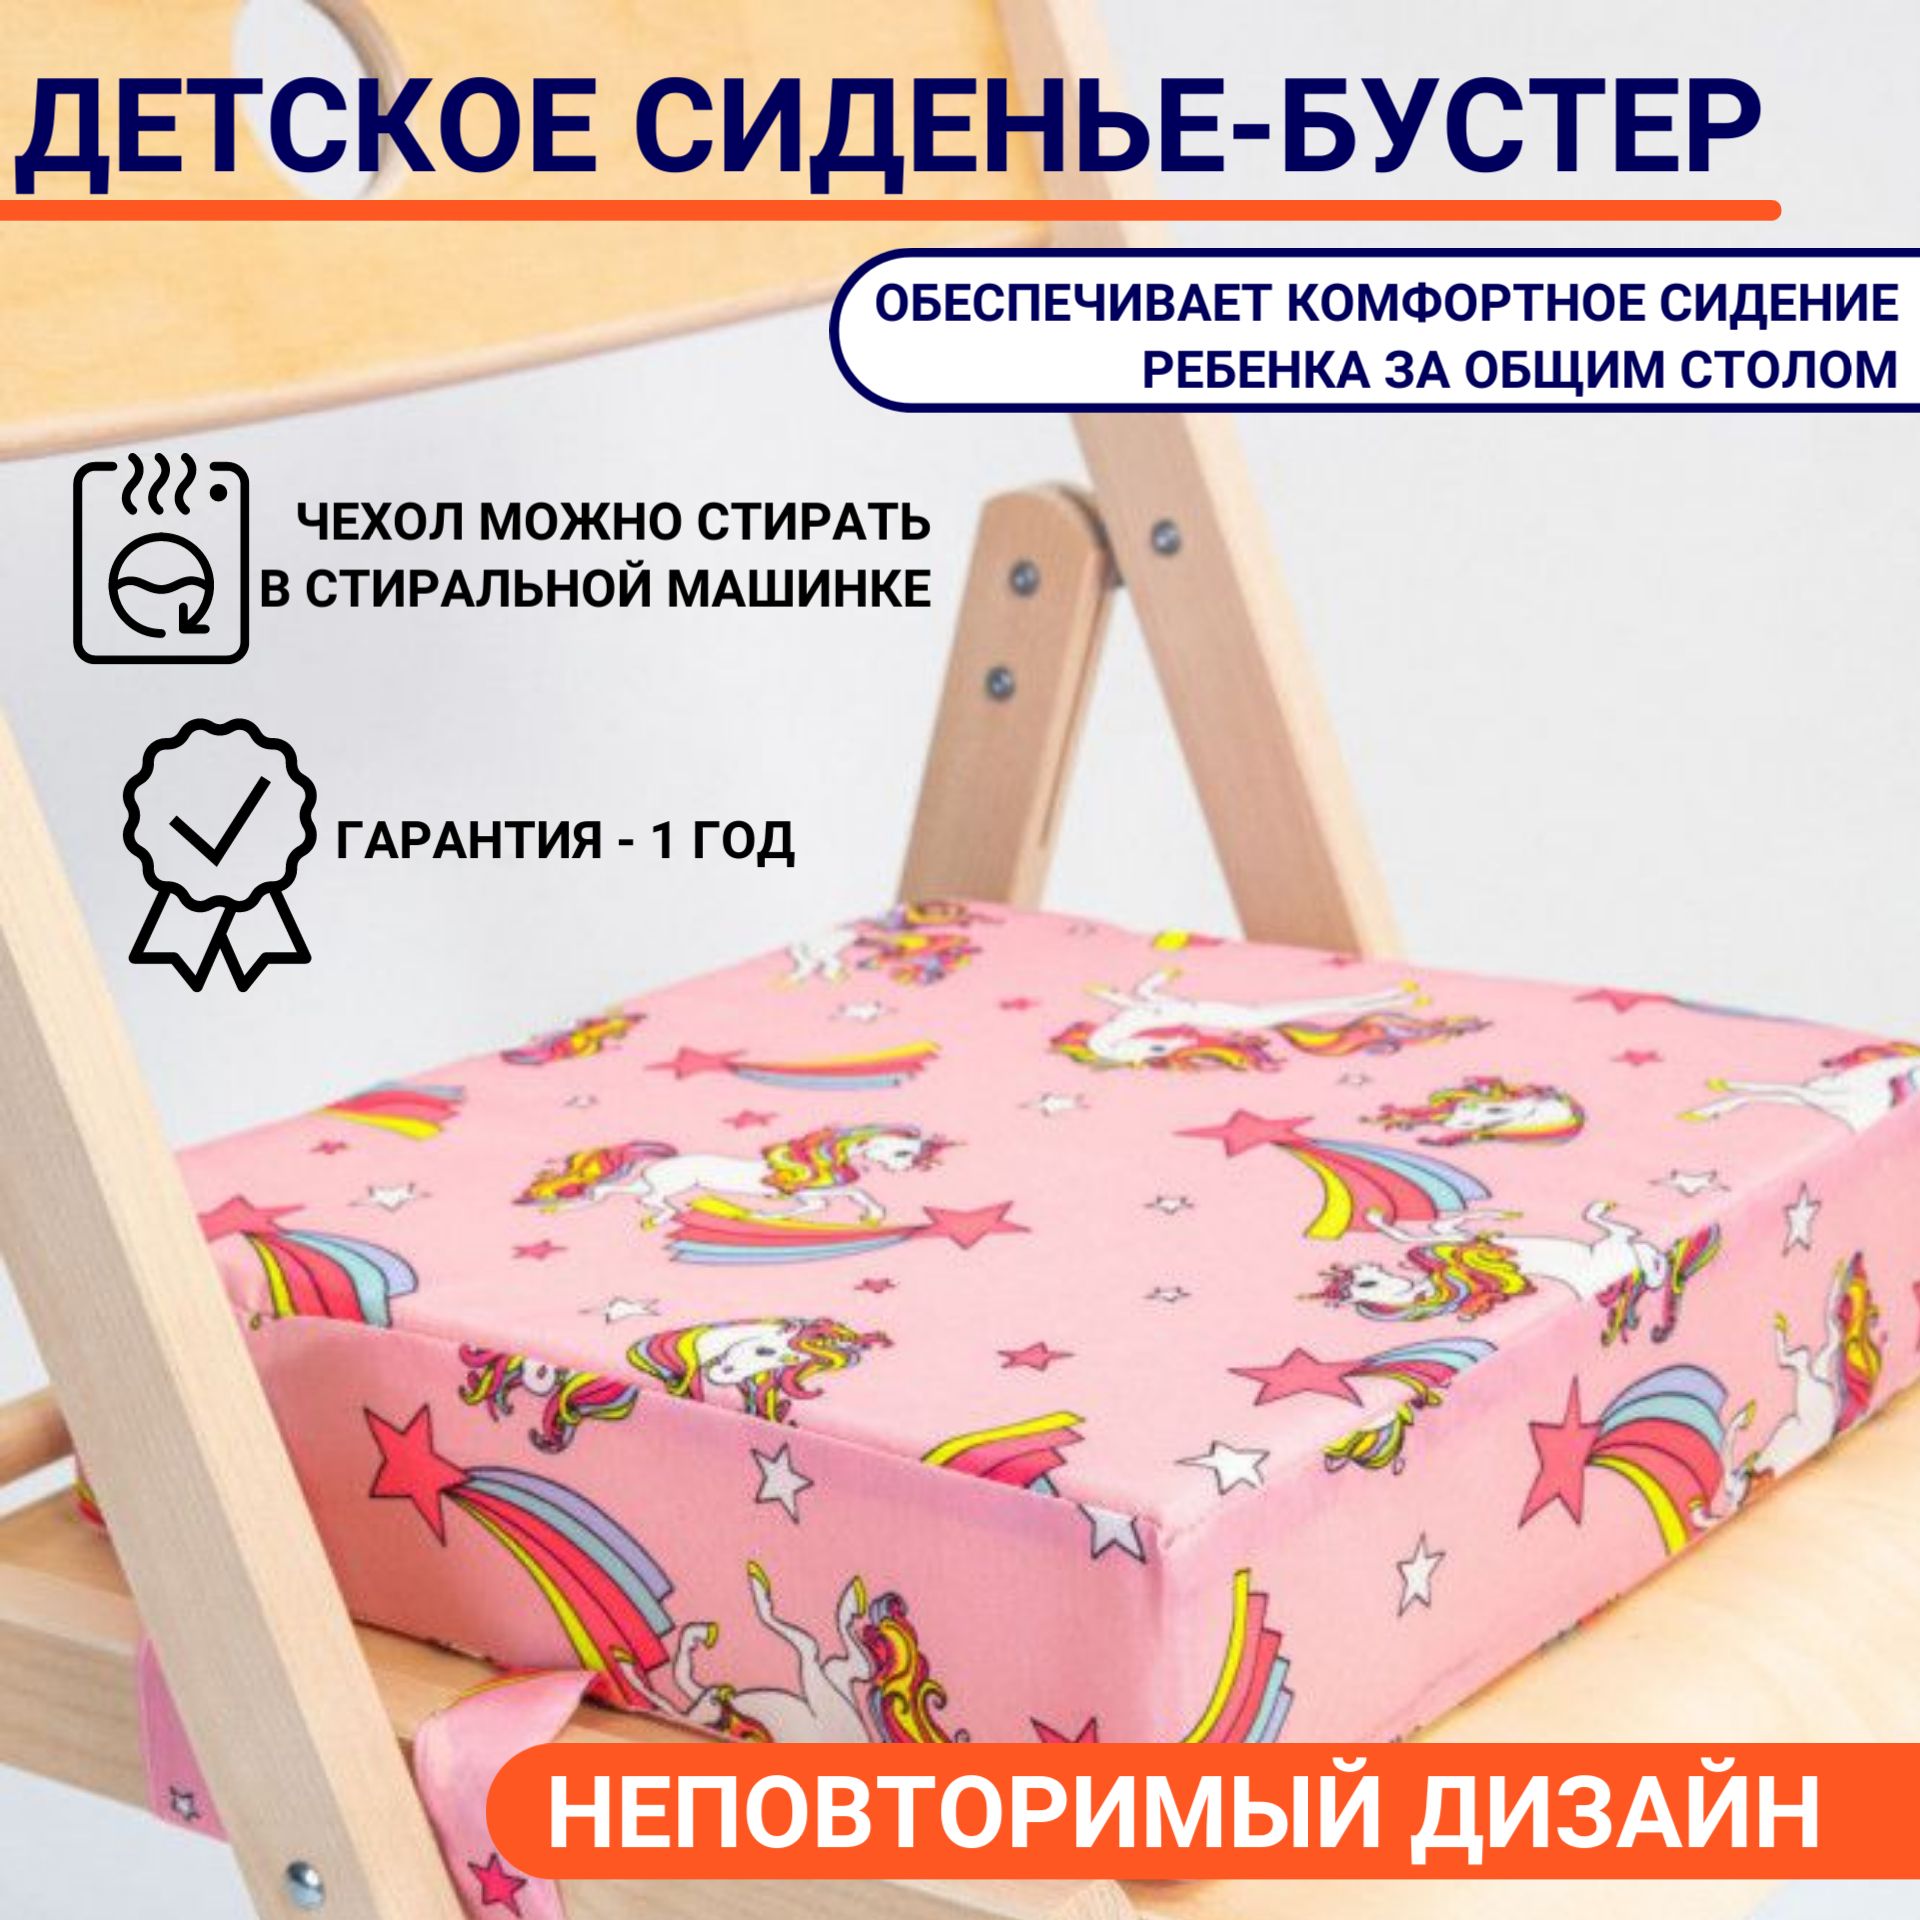 OLX.ua - объявления в Украине - сиденье на ходунки